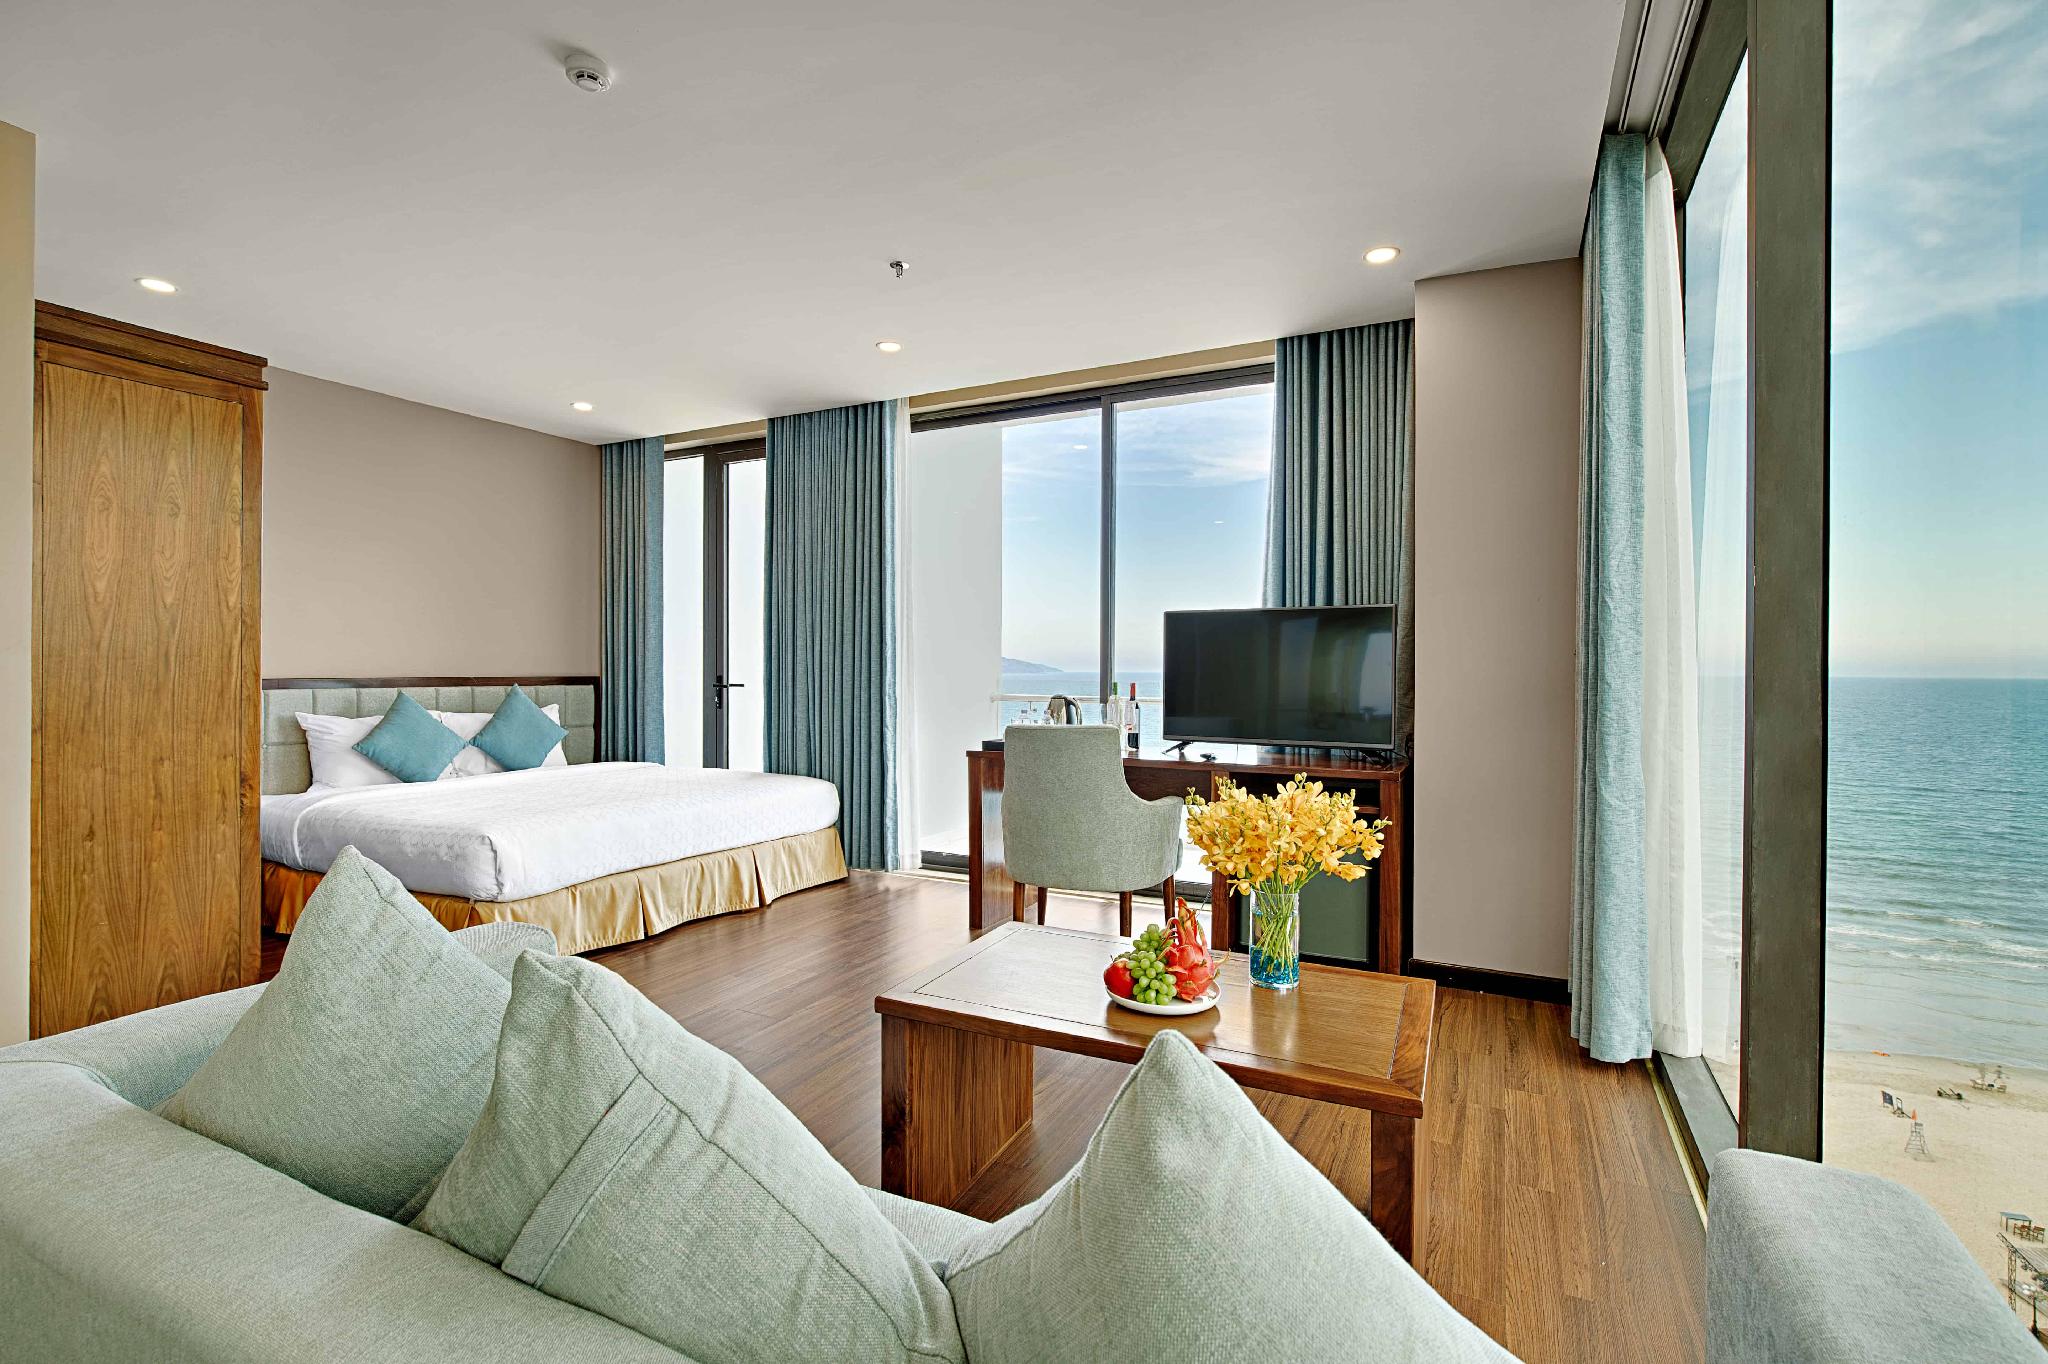 adoma da nang phong ngu - Top 10 khách sạn đẹp nhất ở Đà Nẵng được nhiều du khách lựa chọn